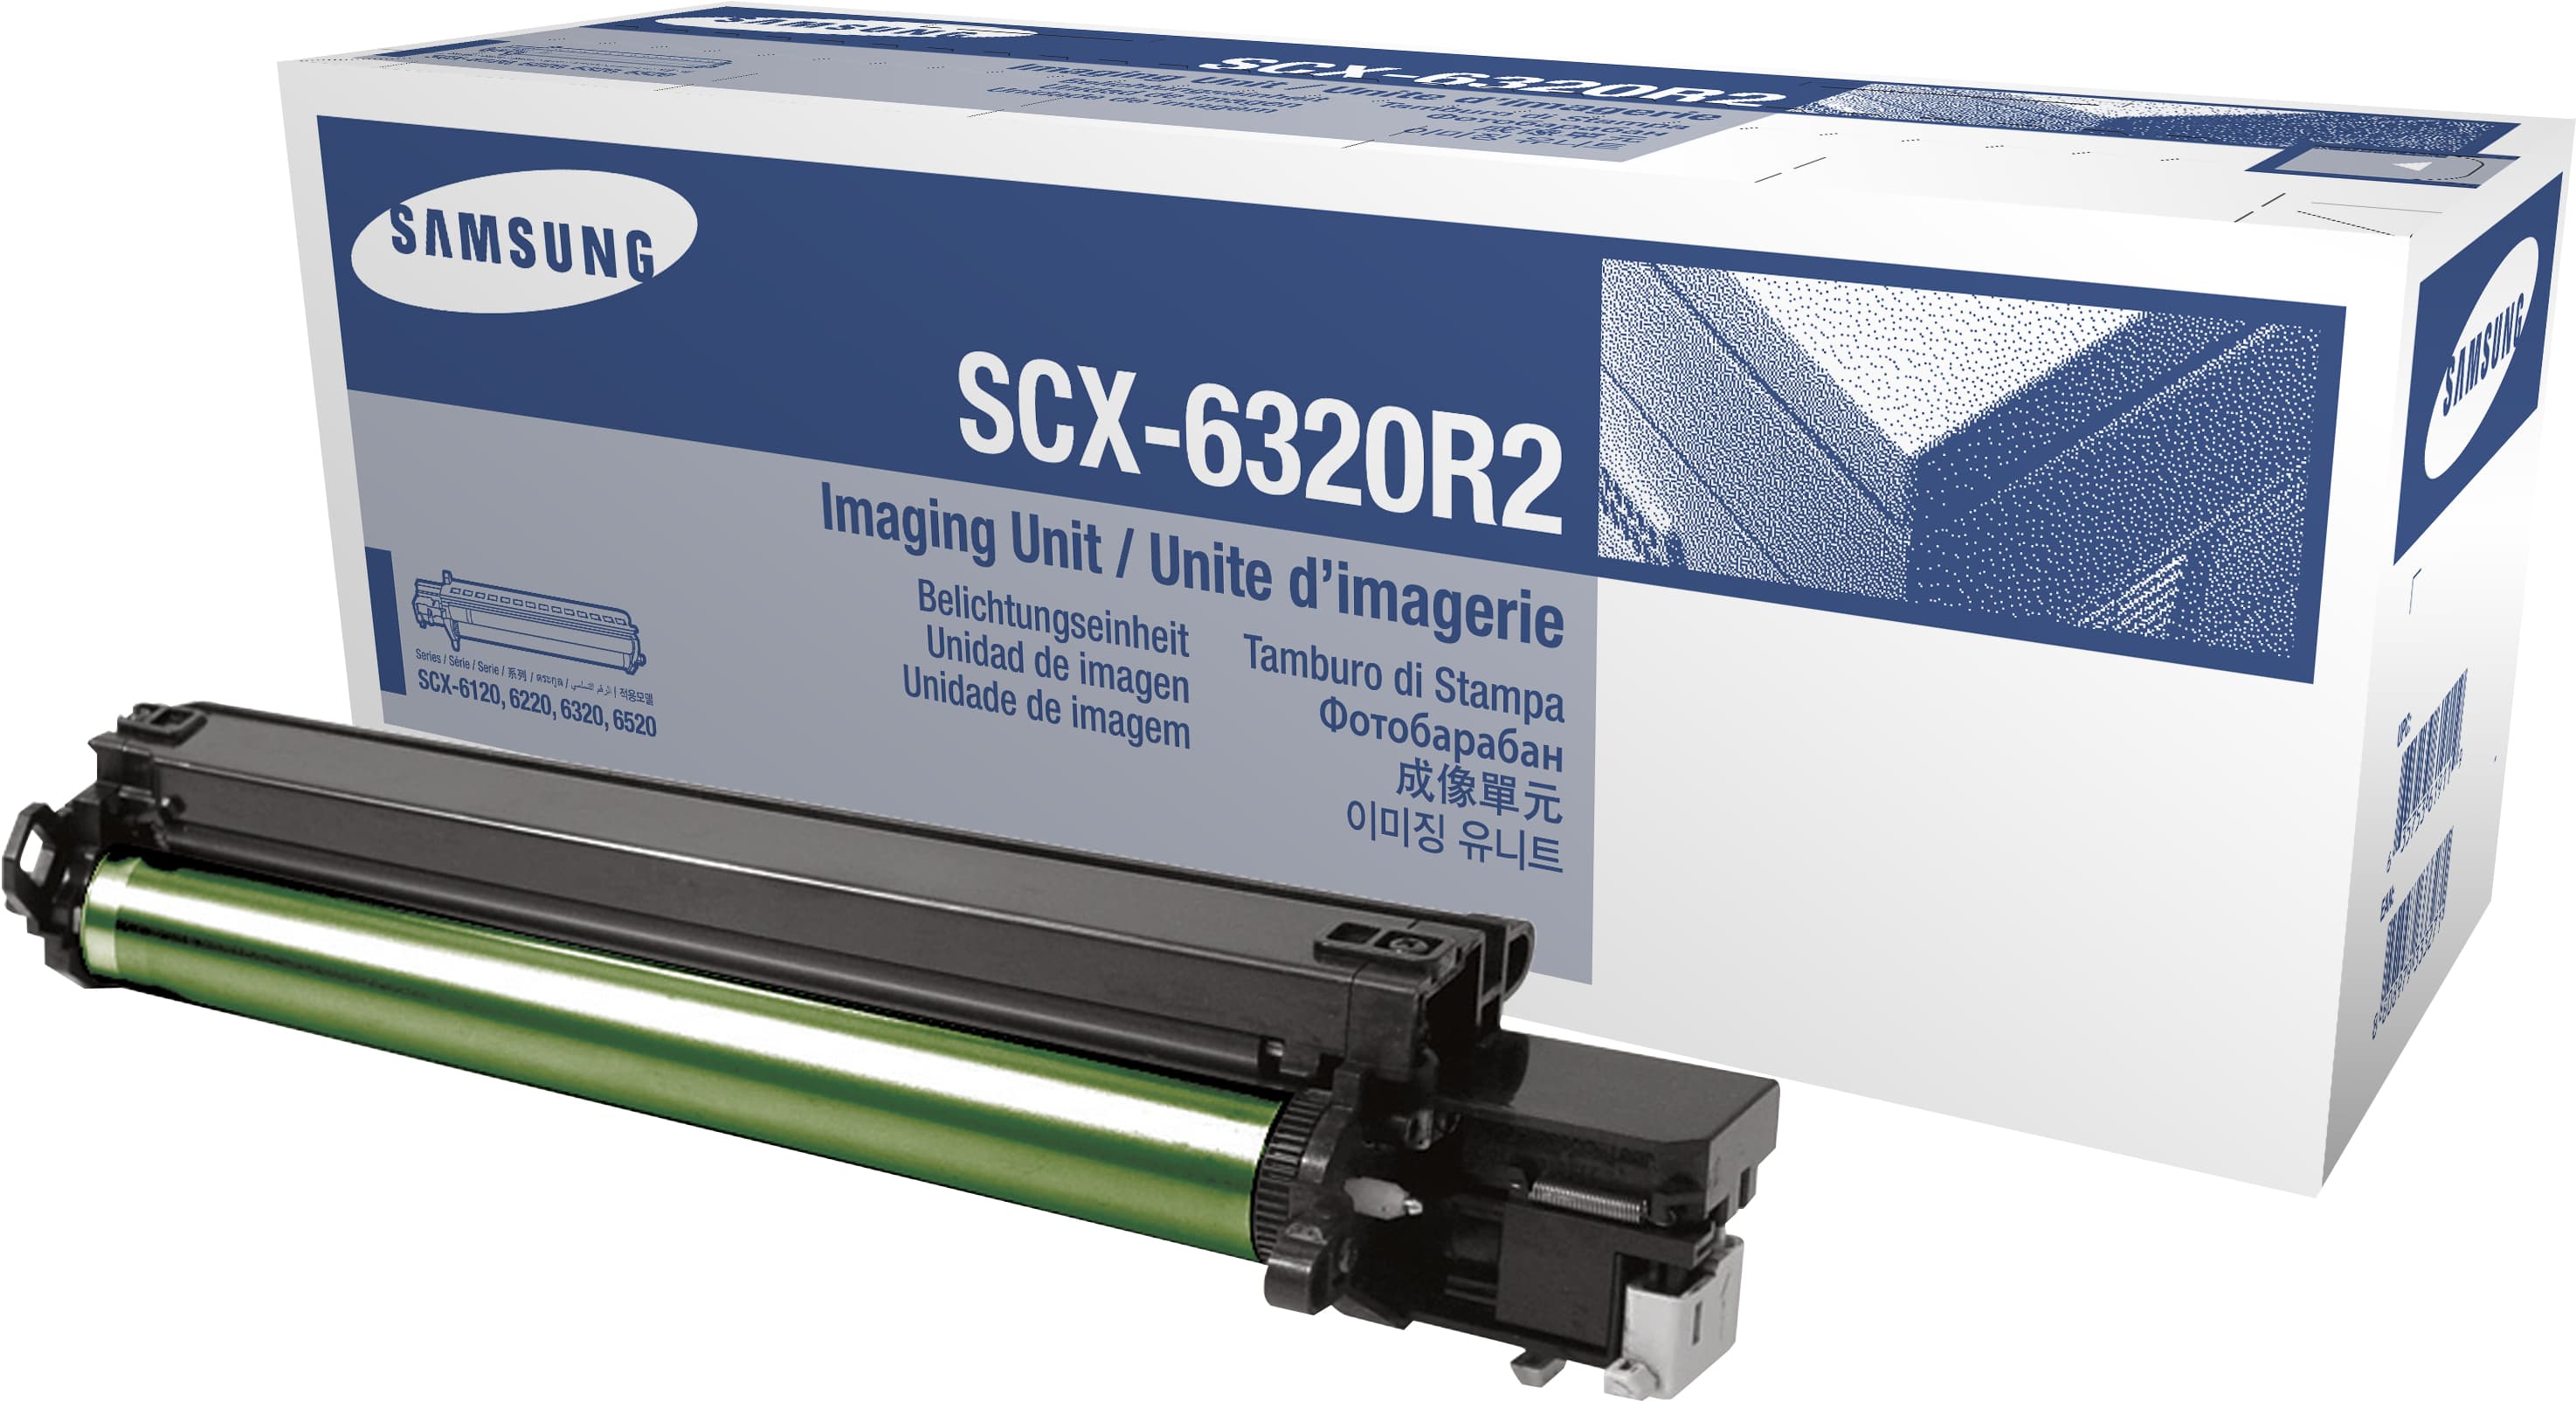 HP SCX-6320R2 - Original - Samsung - 1 Stück(e) - Laserdrucken - SCX-6320R2 - 416 mm